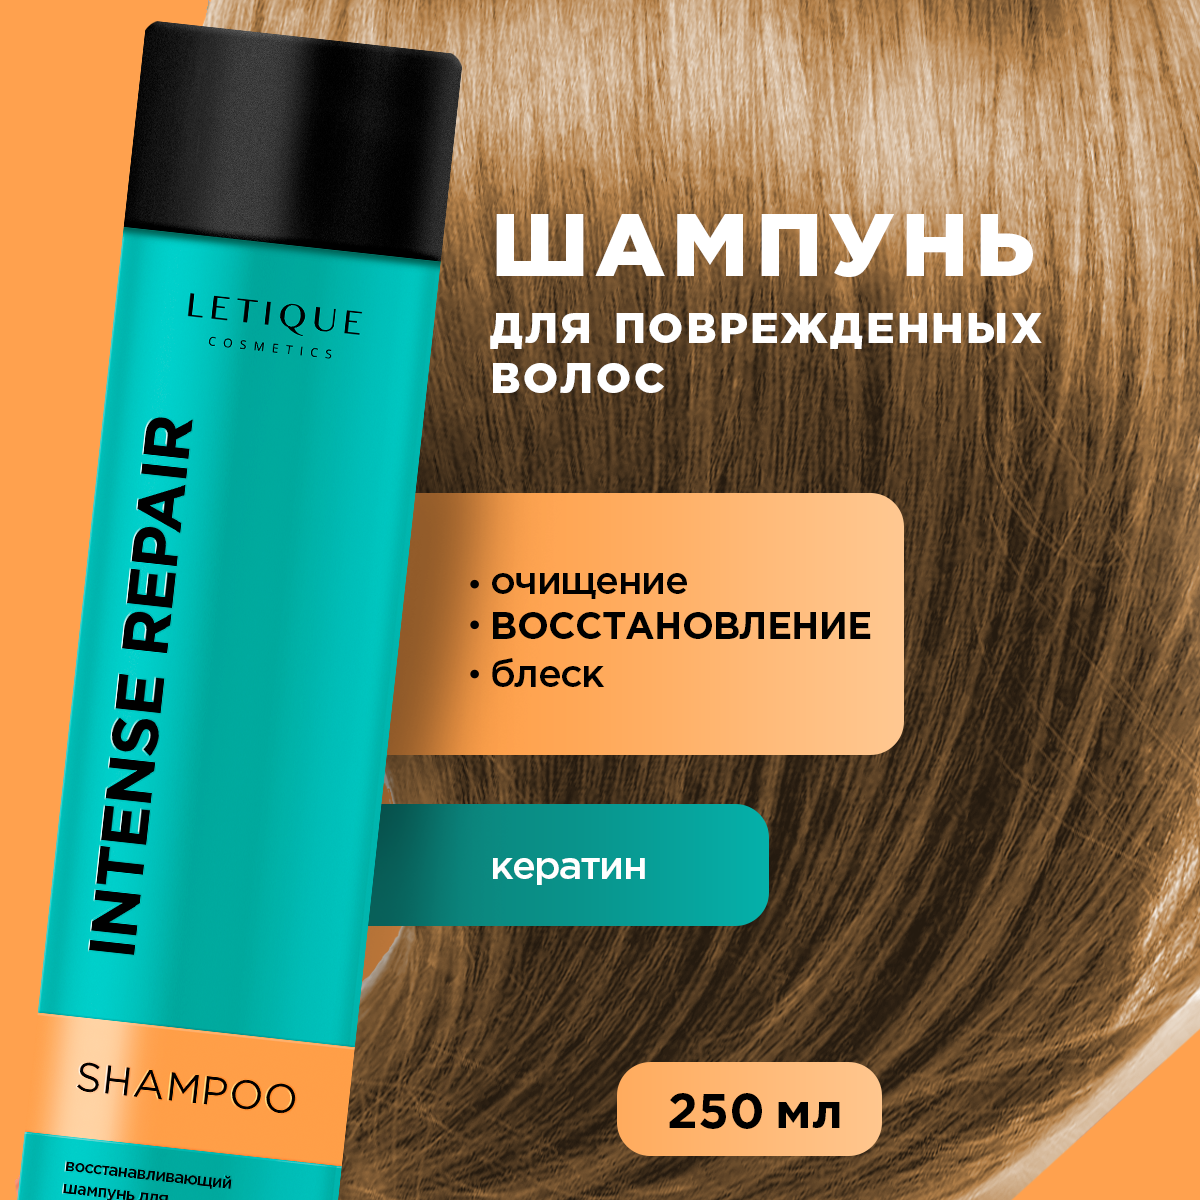 Восстанавливающий шампунь для поврежденных волос Letique Cosmetics, 250 мл